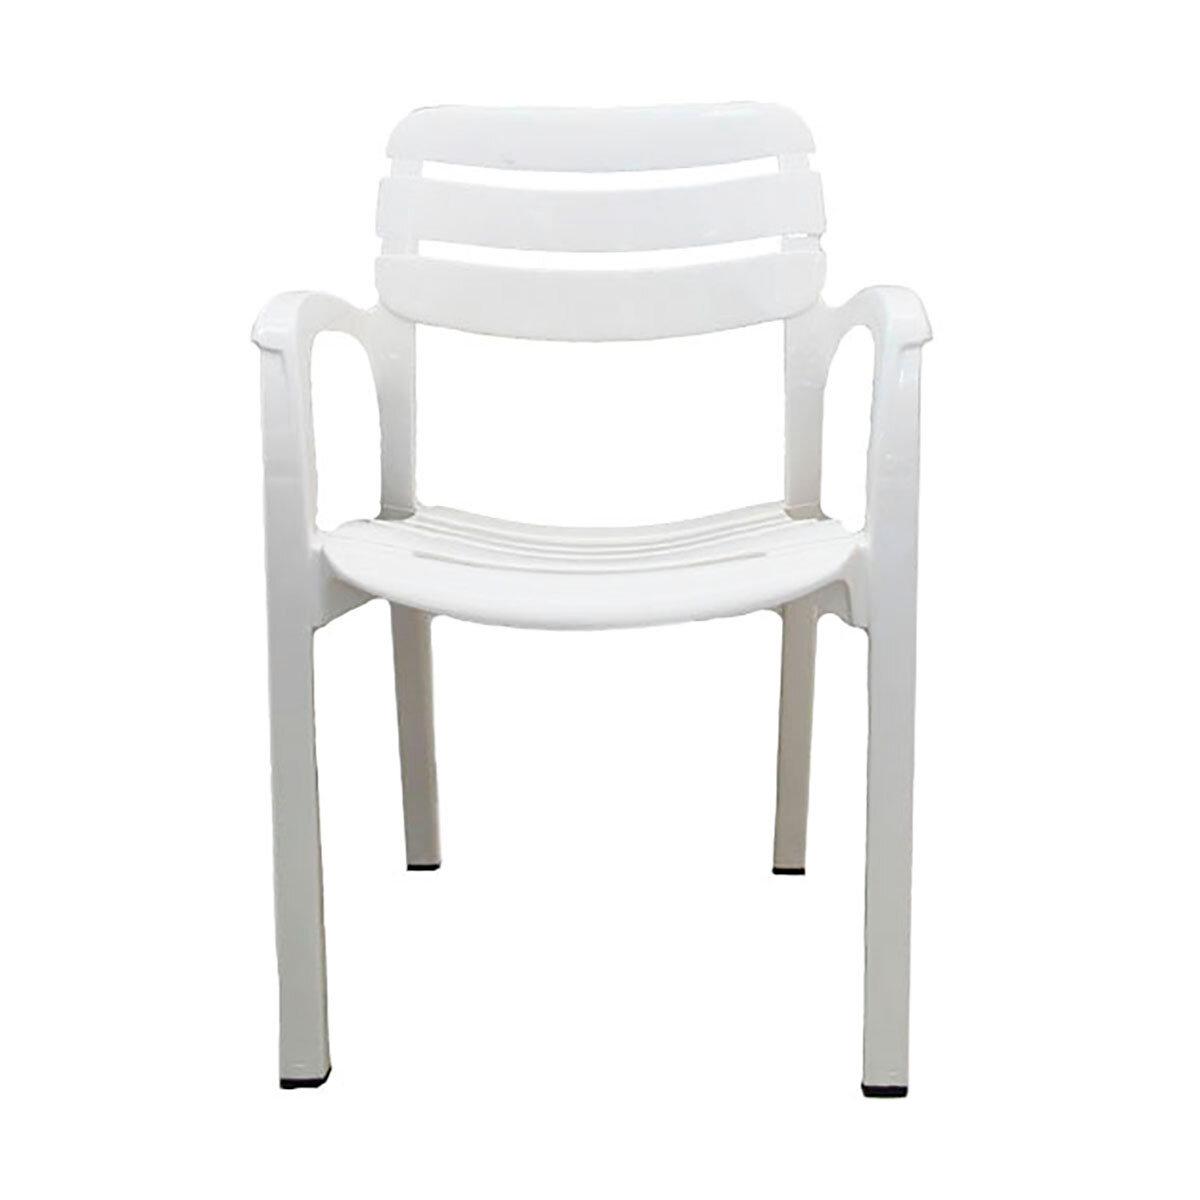 Кресло пластиковое Стандарт Пластик Далгория 83 x 44 x 60 см белое